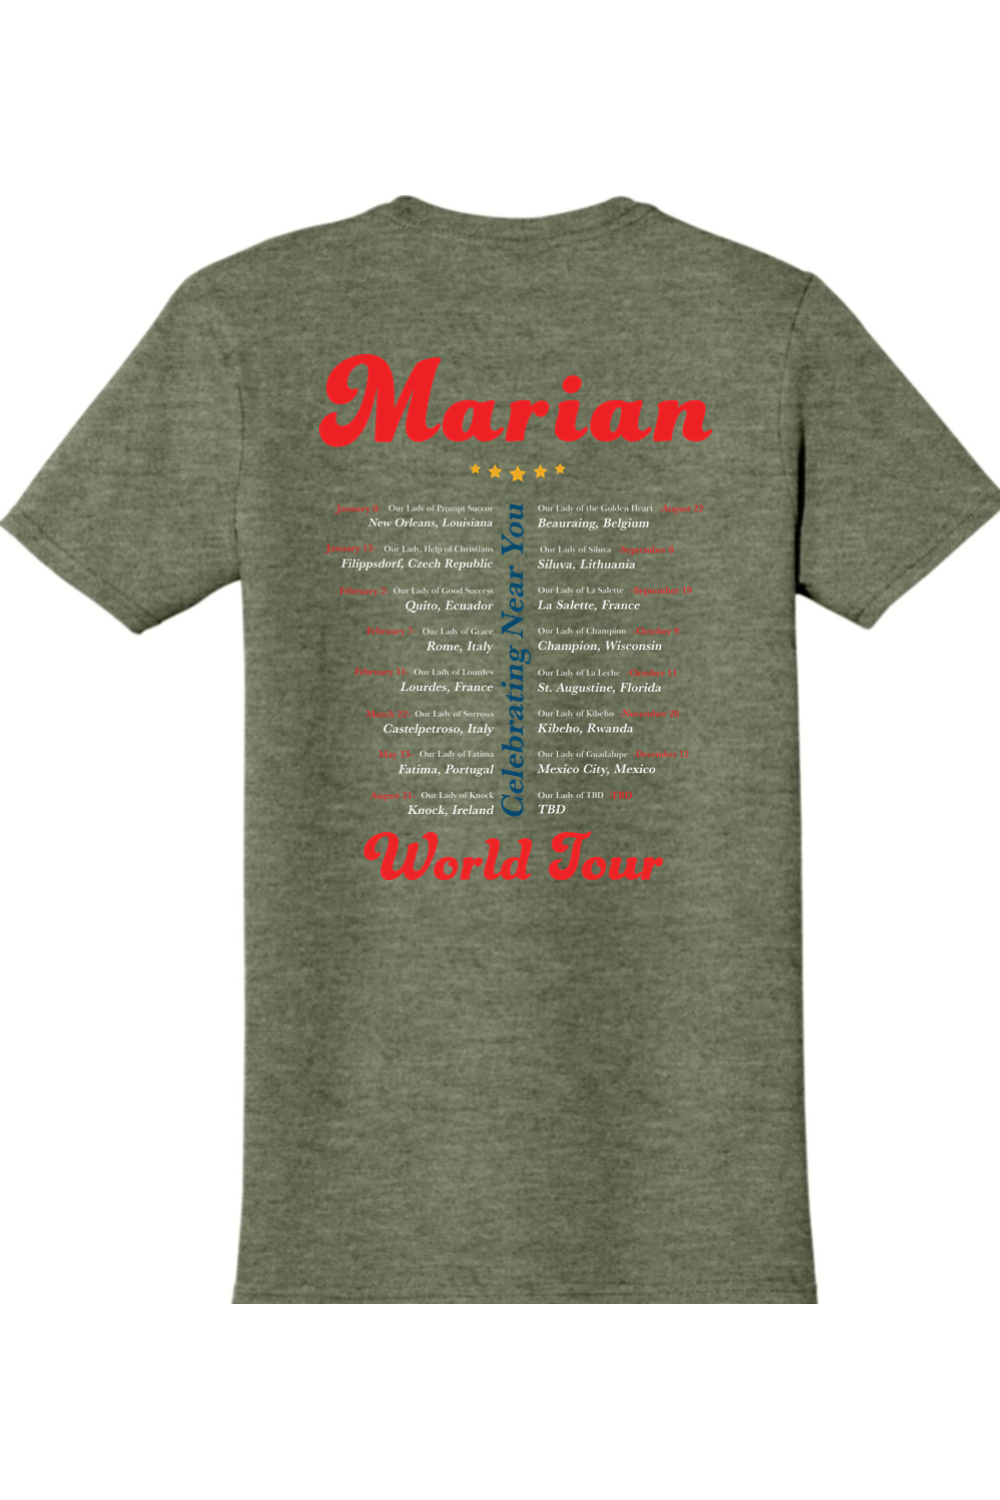 Marian World Tour Adult T-shirt